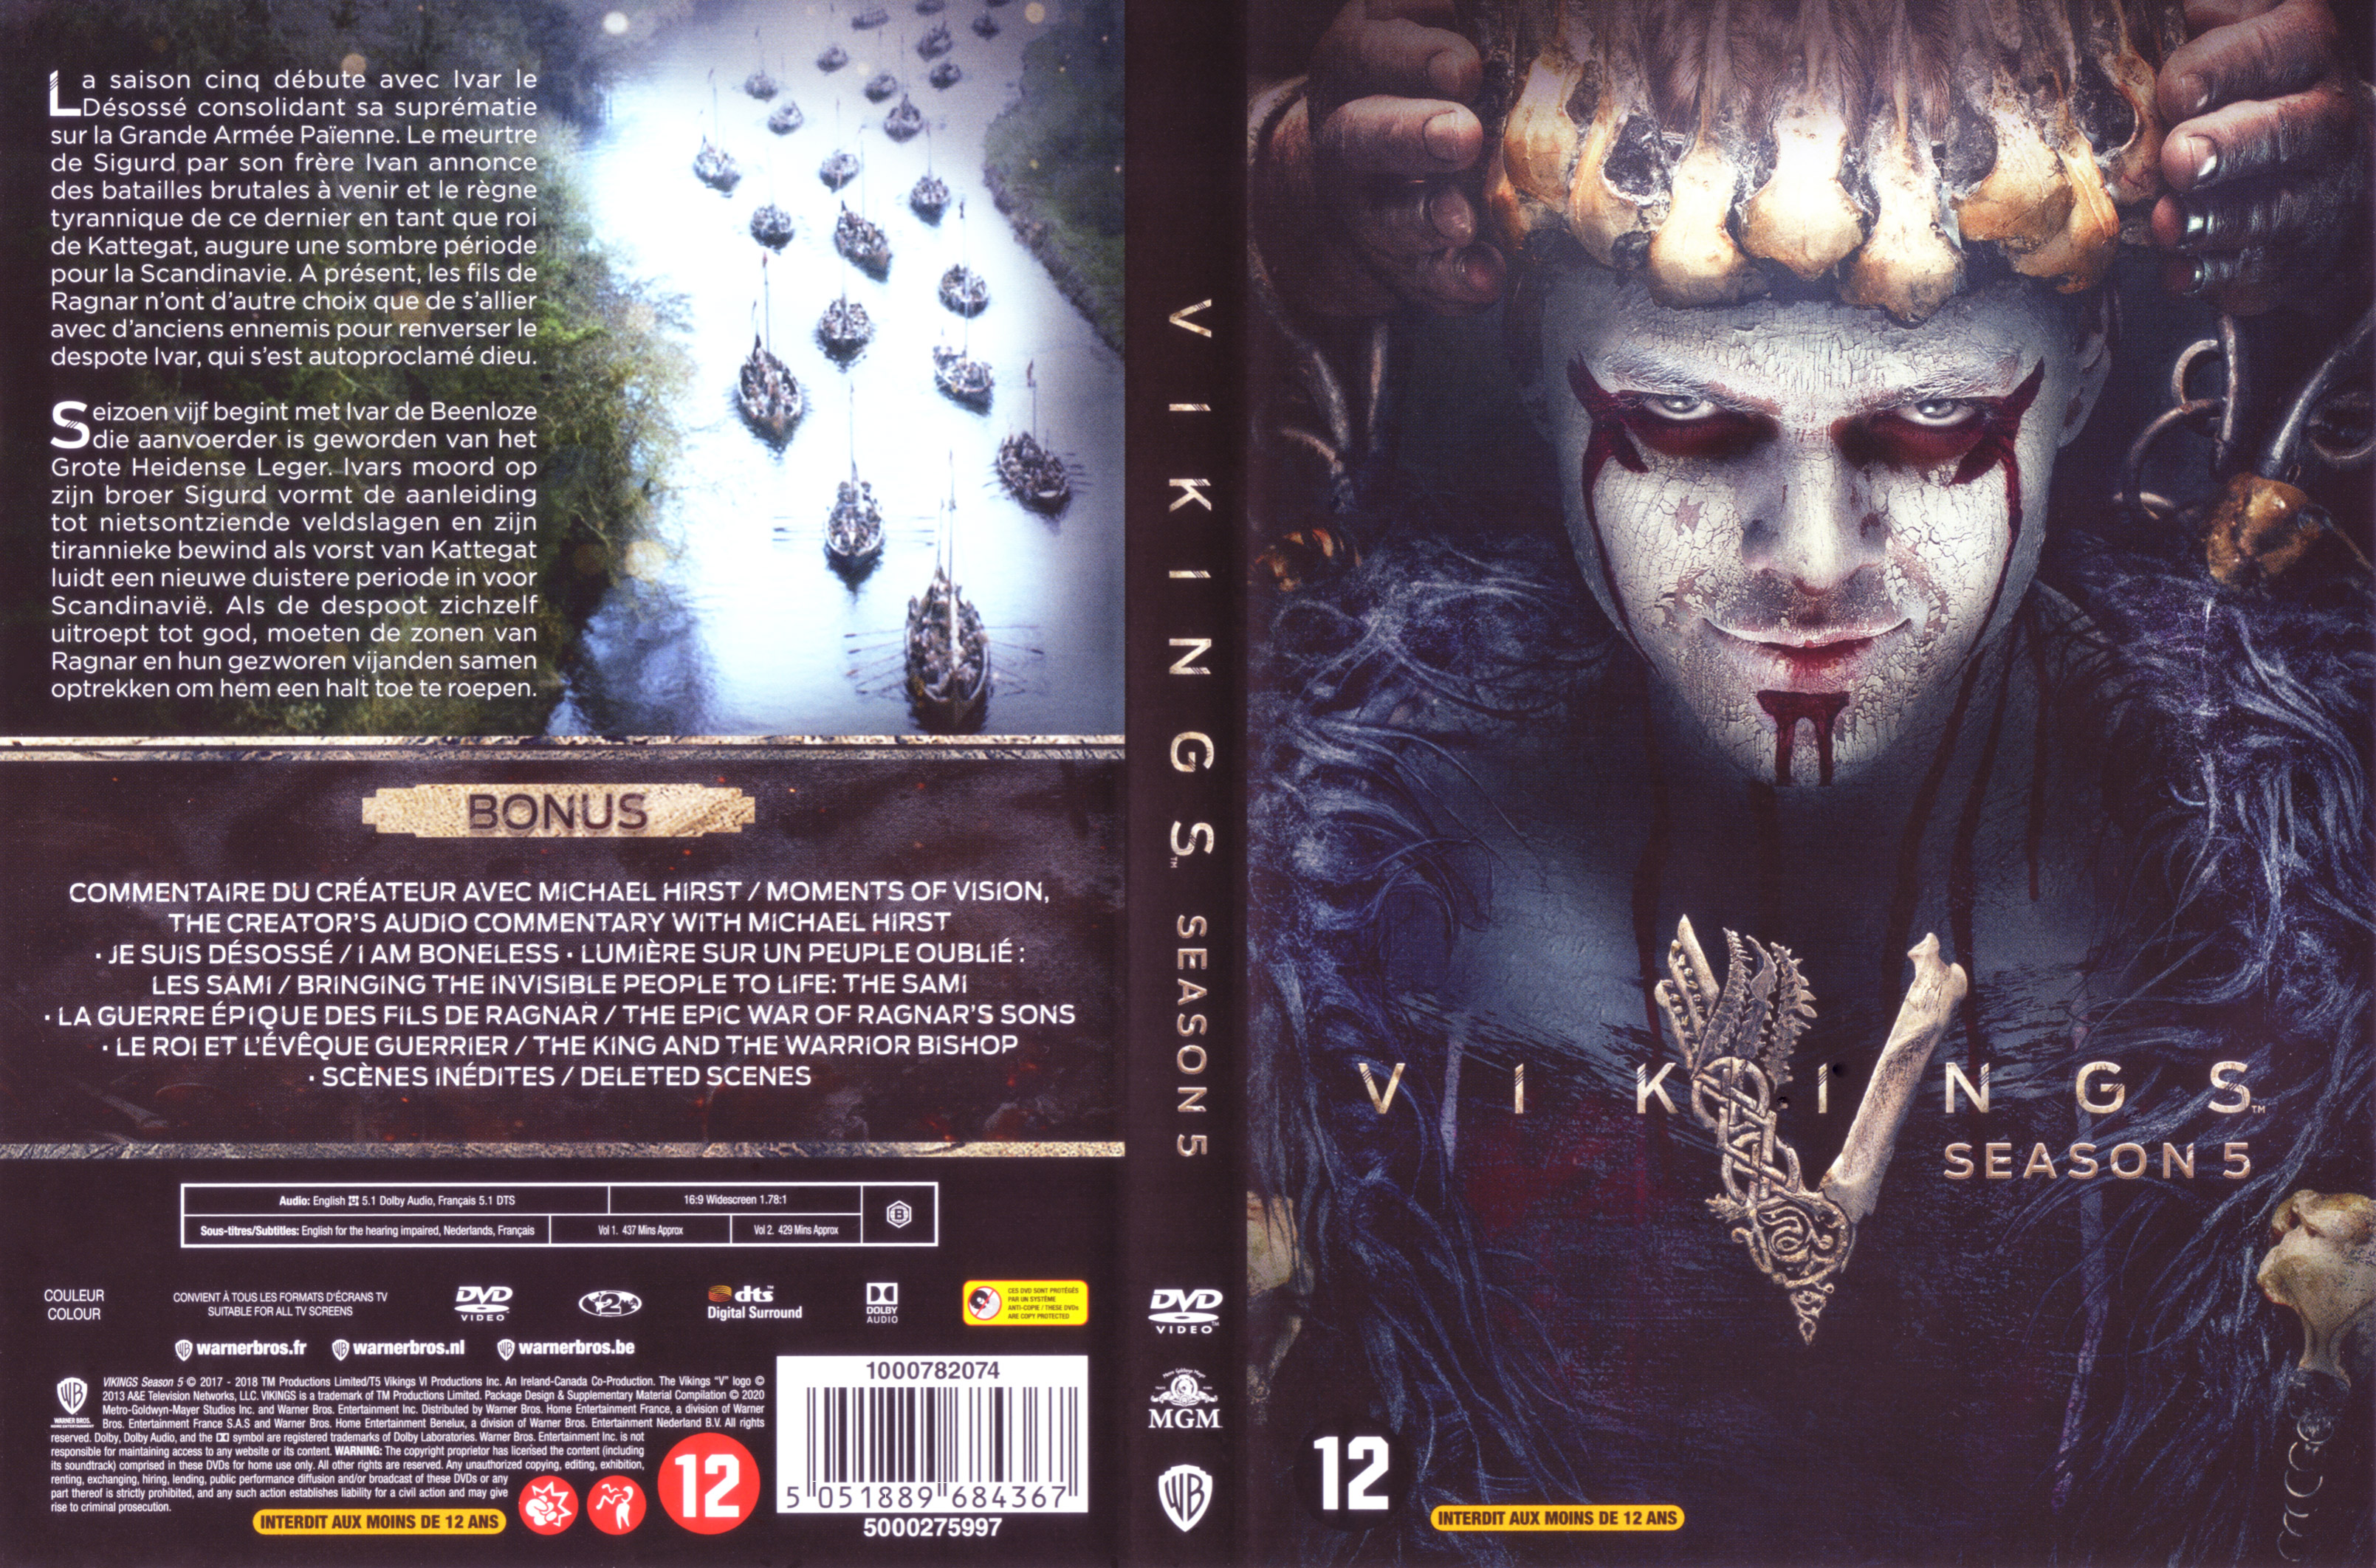 Jaquette DVD Vikings Saison 5